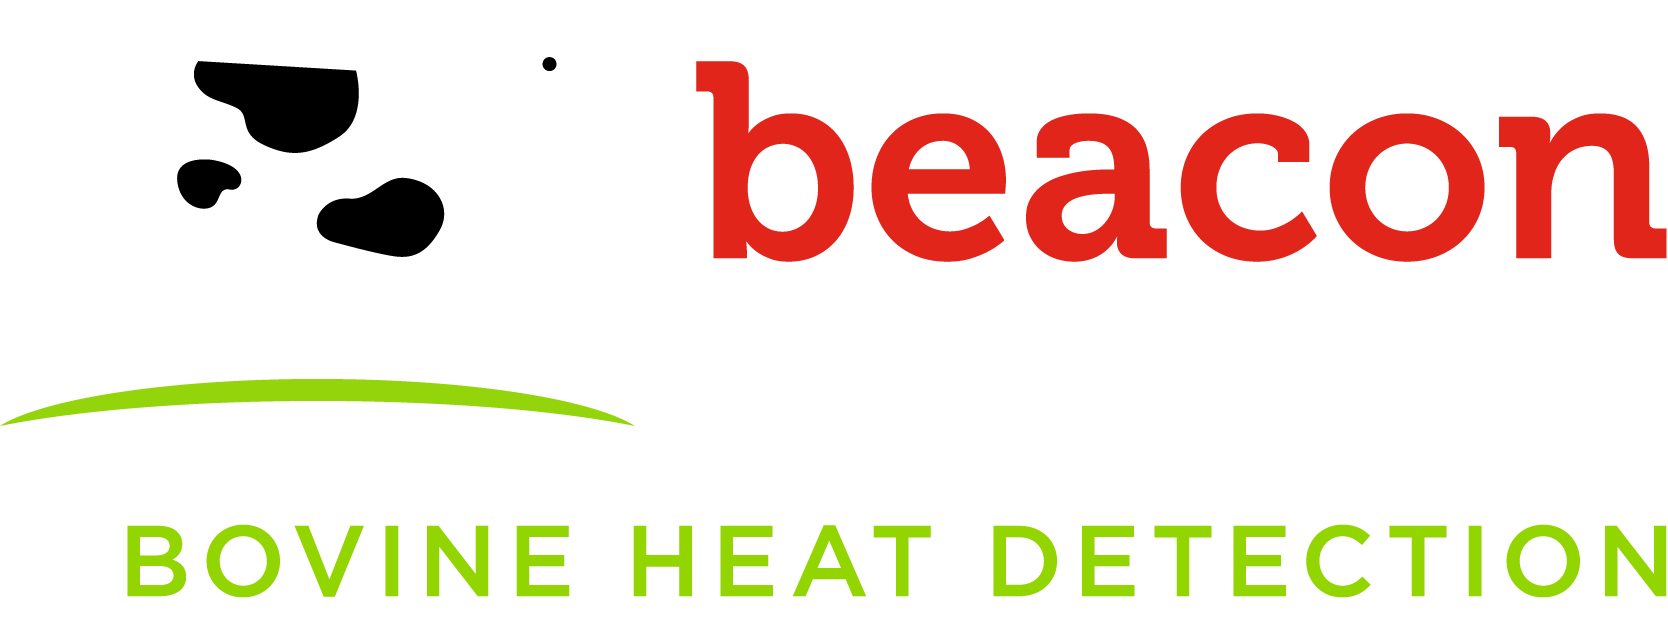 Beacon Heat Detectors